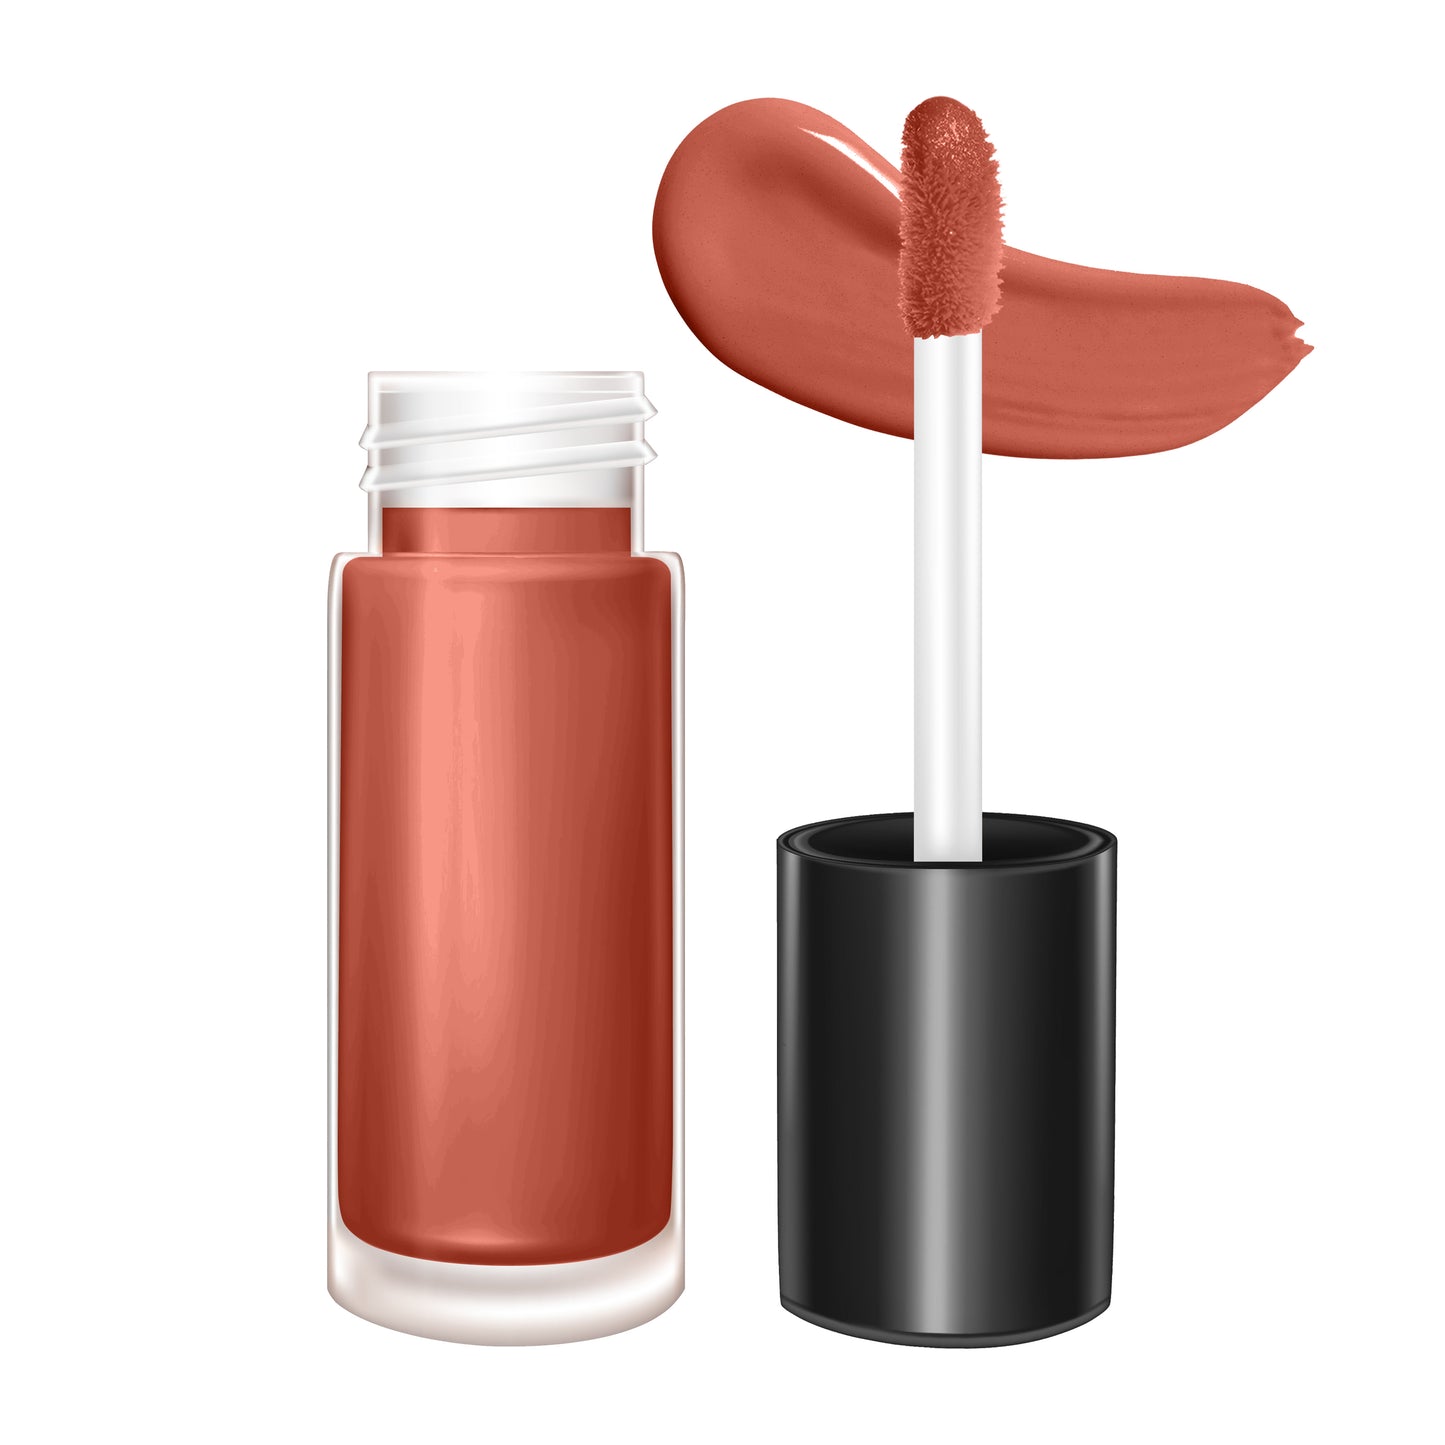 Ketiara Smudge-proof Colorful Matte Liquid Lipstick Infused With Vitamin E, 6 ml